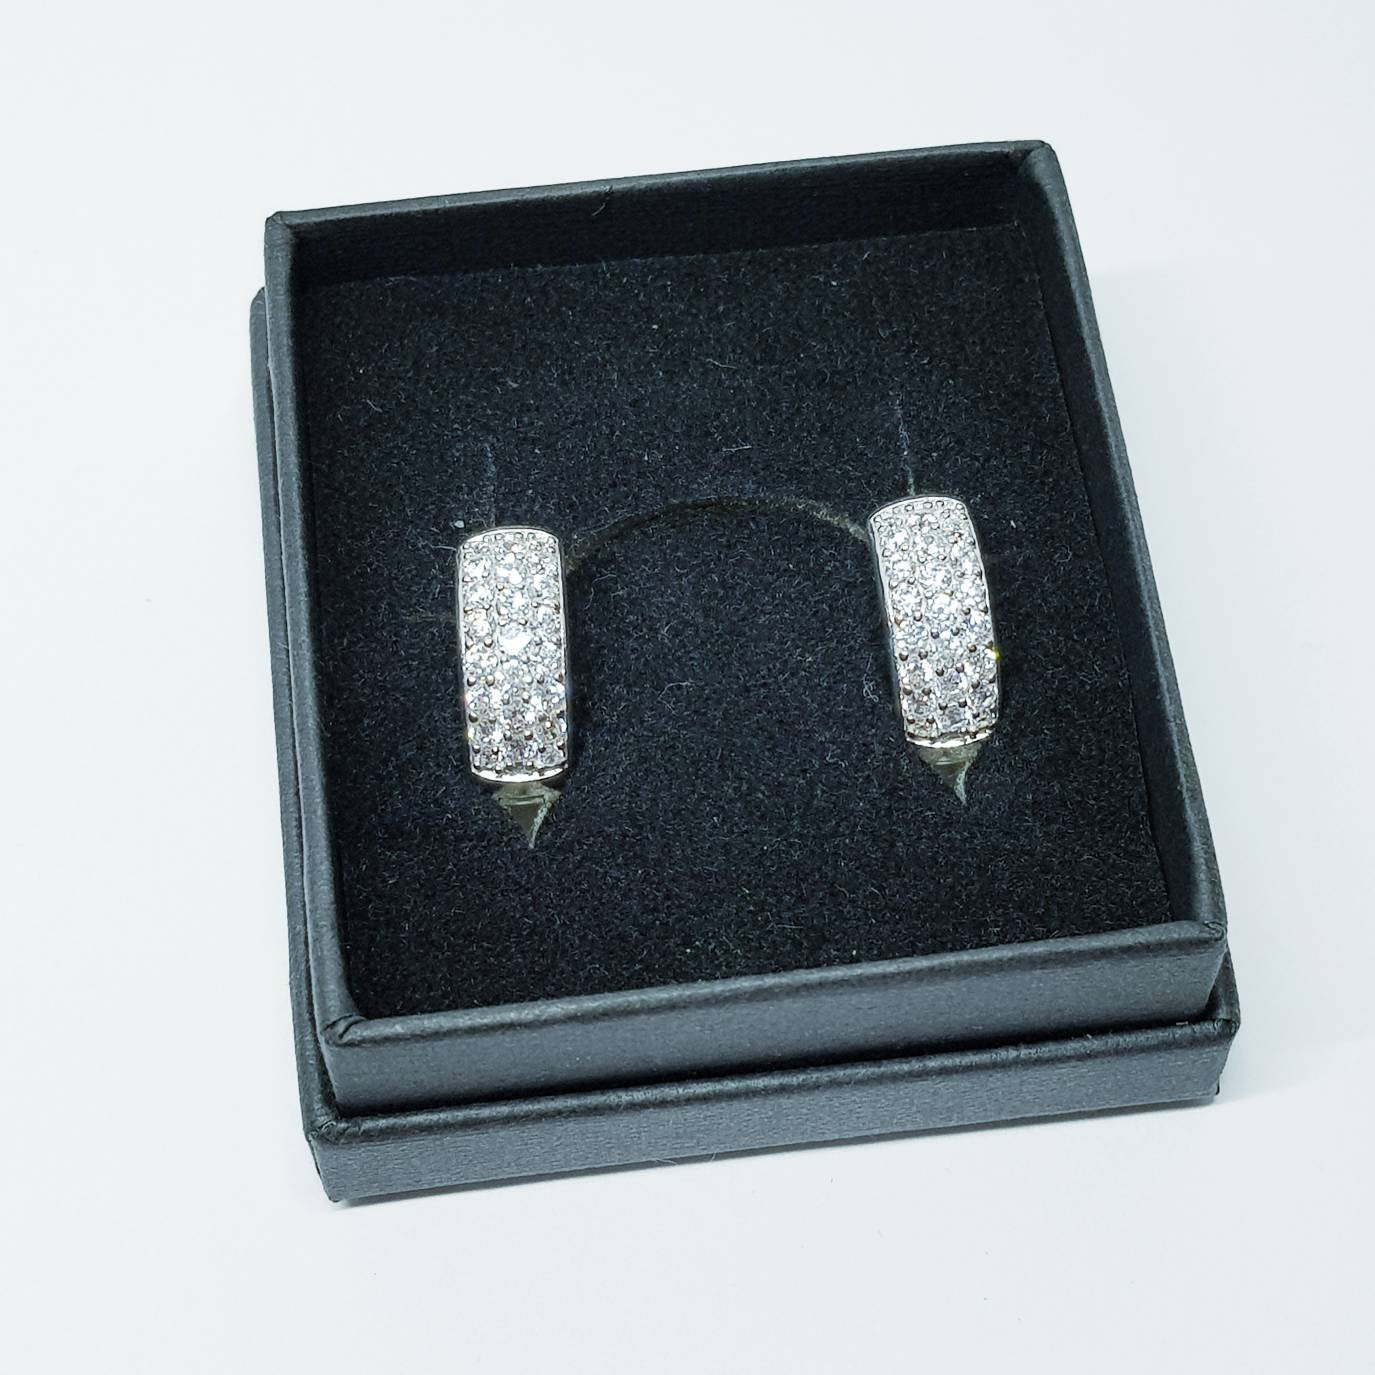 Sterling silver hoop earrings, chunky diamond hoop earrings, silver huggie earrings